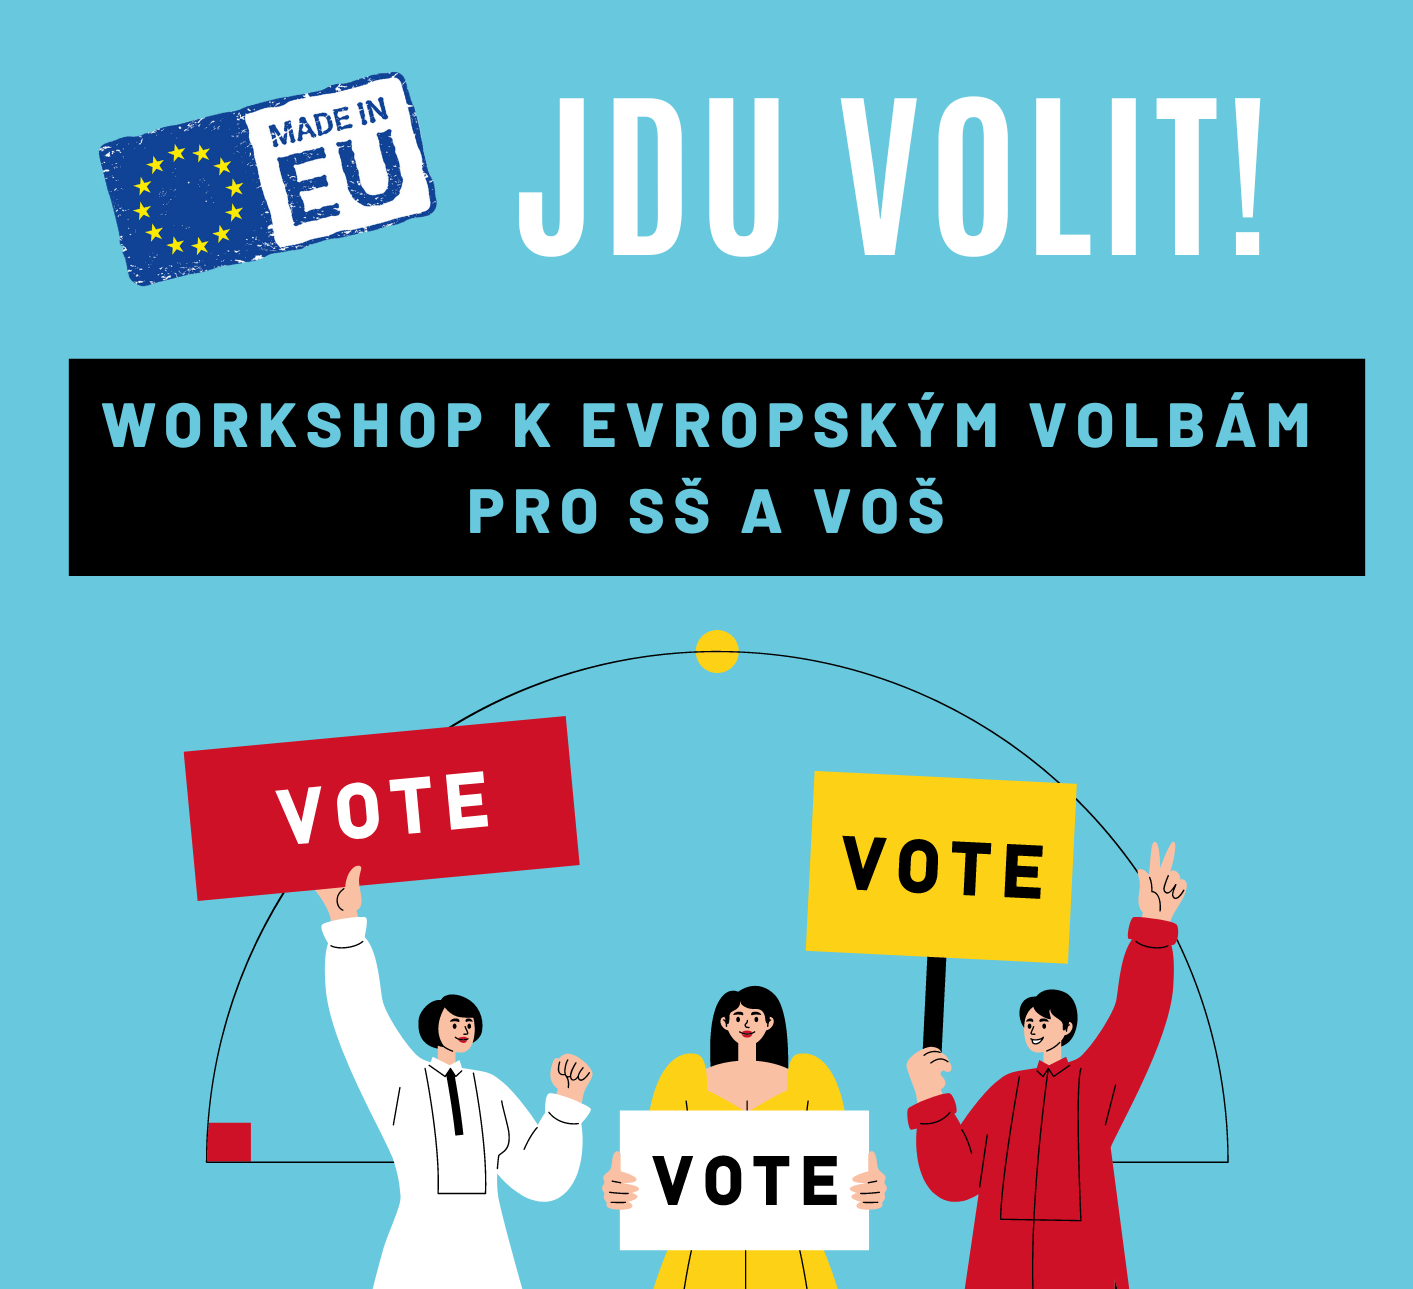 Přečtete si více ze článku Jdu volit! Eurocentrum Pardubice nabízí interaktivní volební workshop pro studenty SŠ a VOŠ